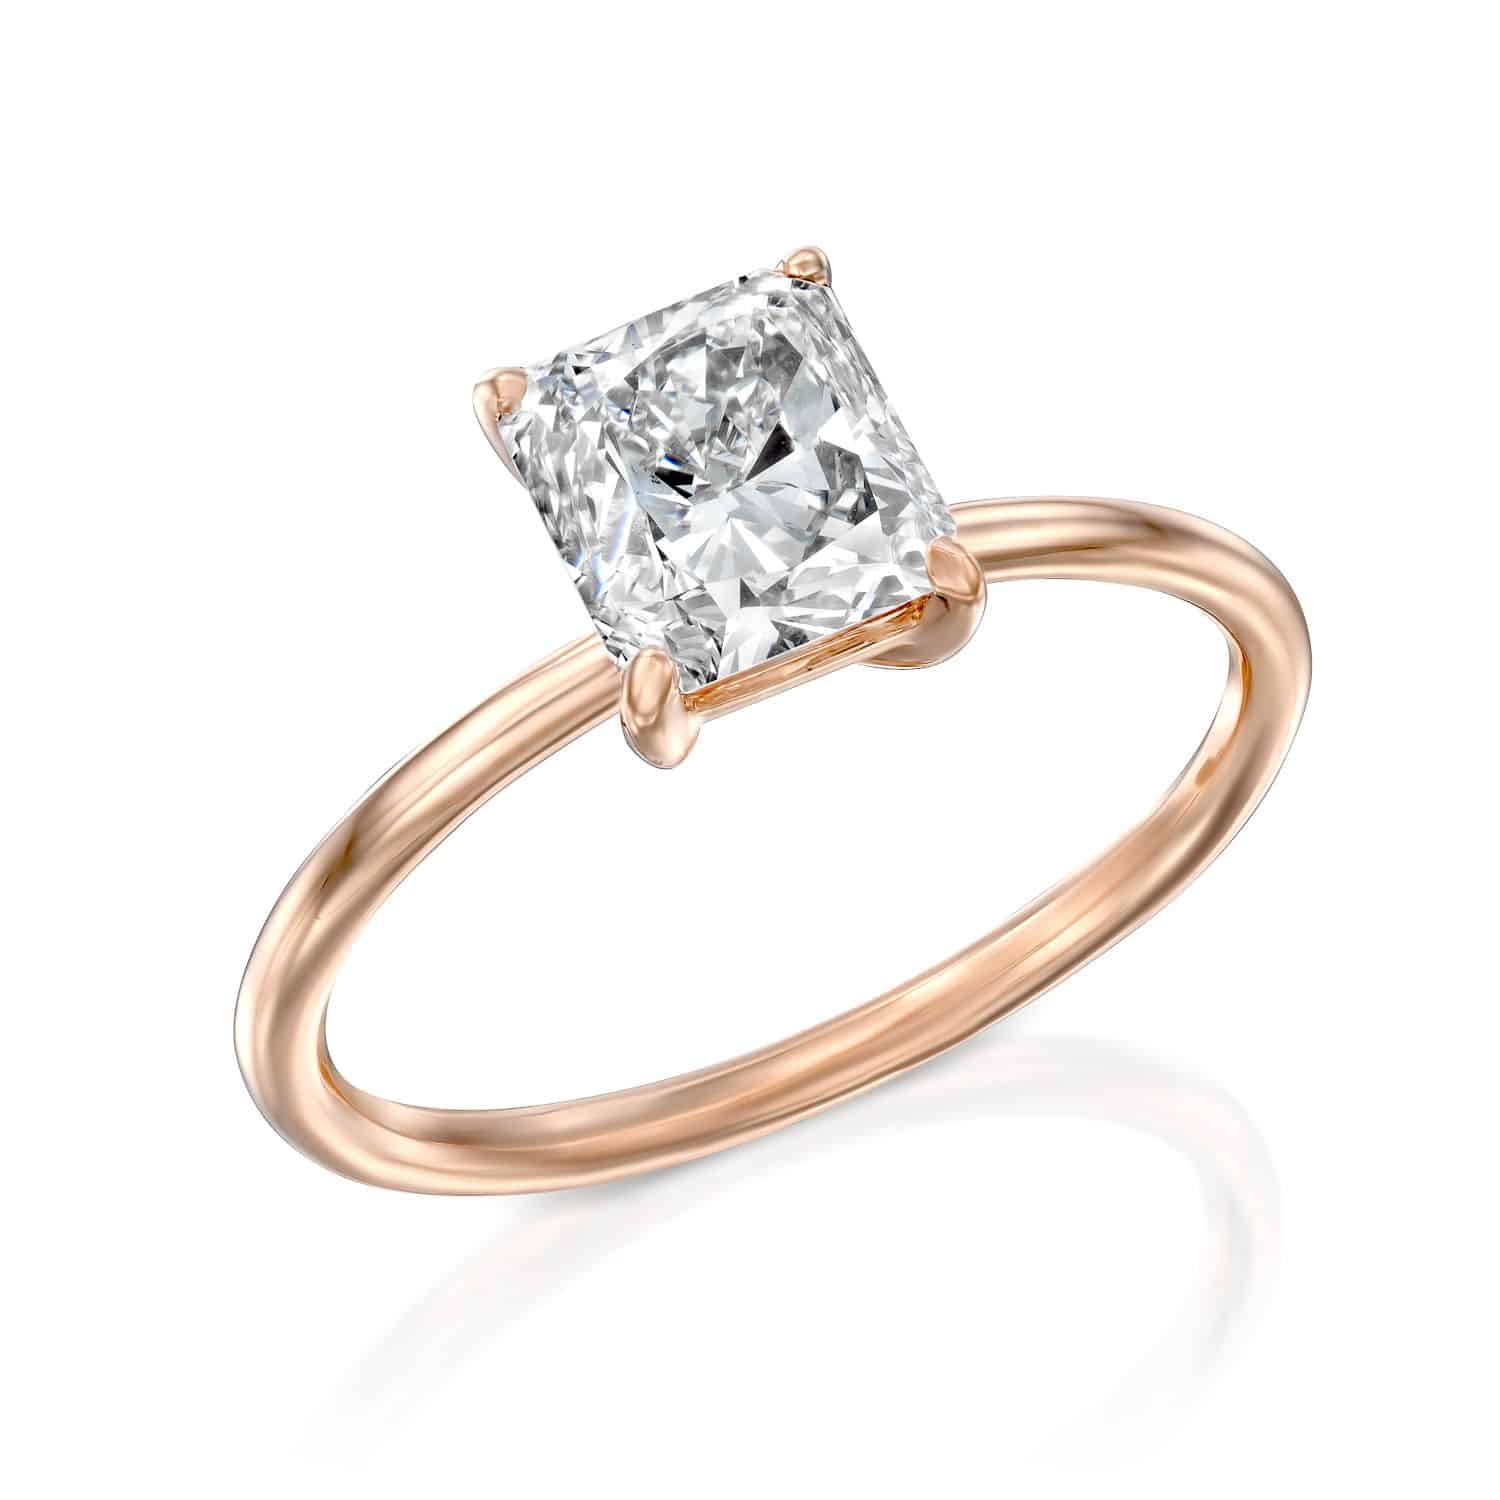 טבעת זהב ורדרד אלגנטית הכוללת יהלום יחיד בחיתוך קורן משובץ בעיצוב סוליטר קלאסי.